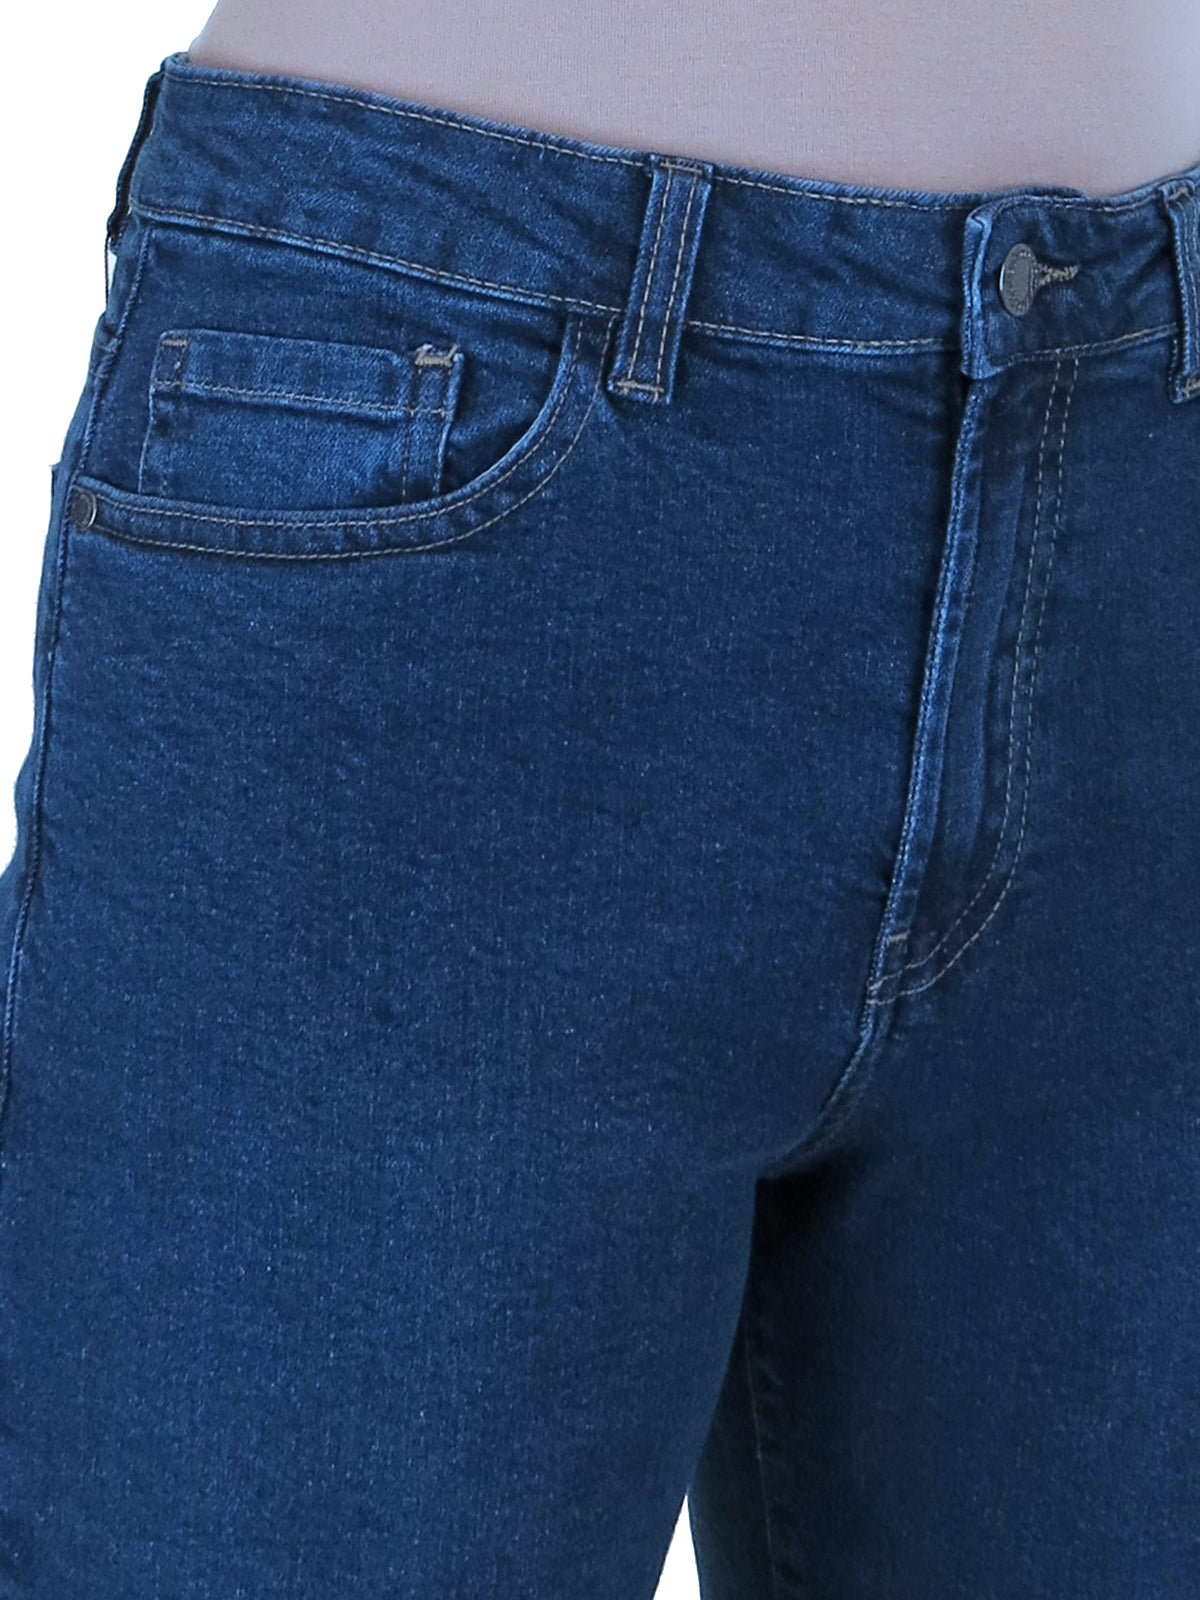 Women's Cropped Stretch Denim Slim Fit Capri Jeans Dark Blue Fade